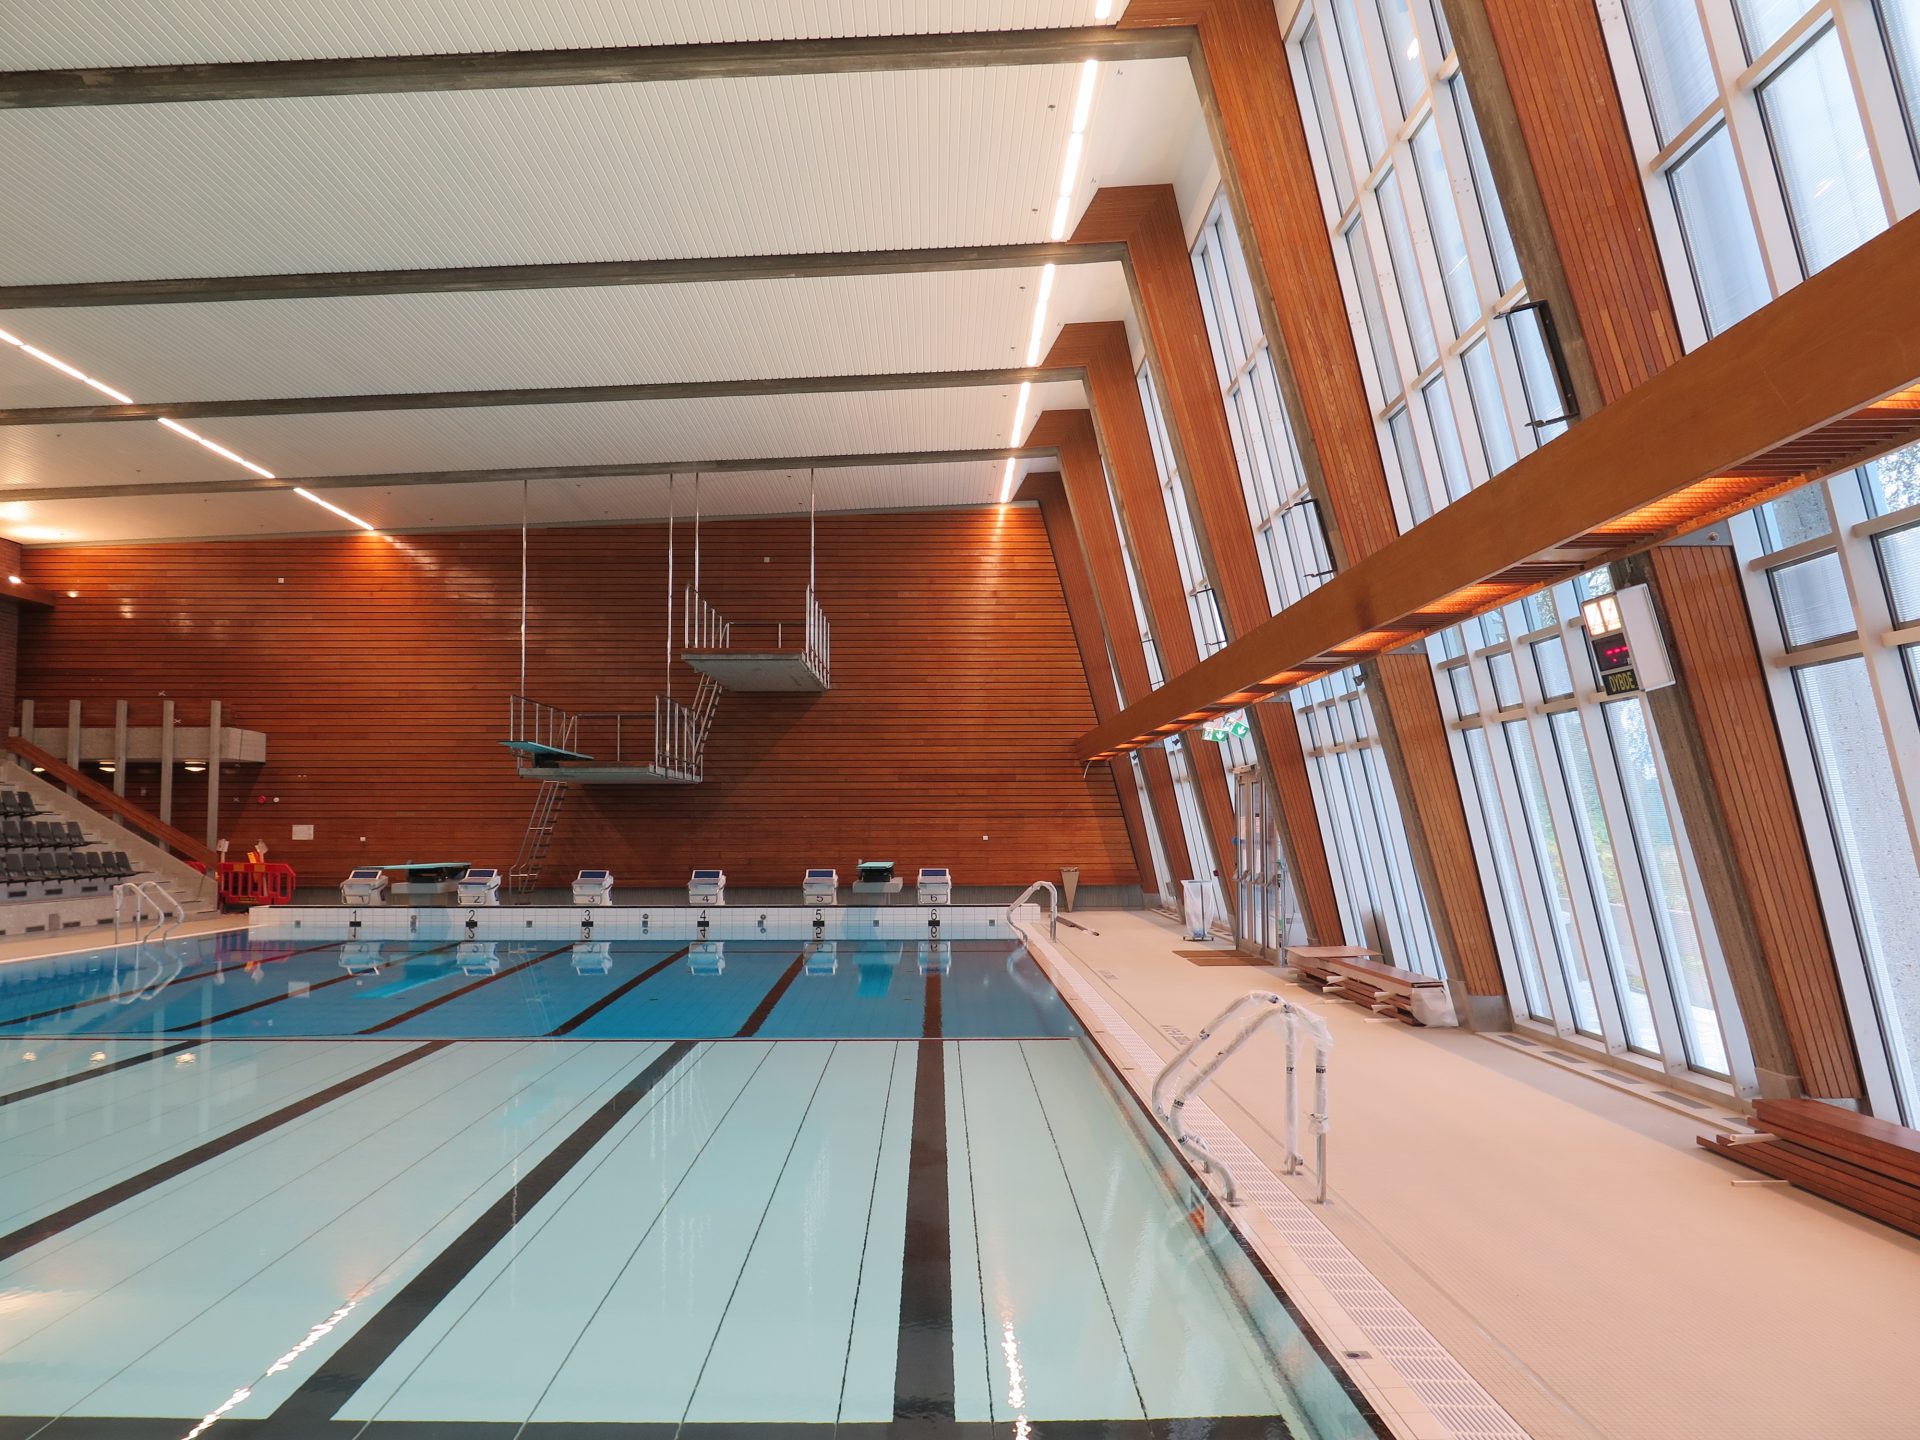 Foto av svømmebassenget innendørs på Norges idrettshøgskole